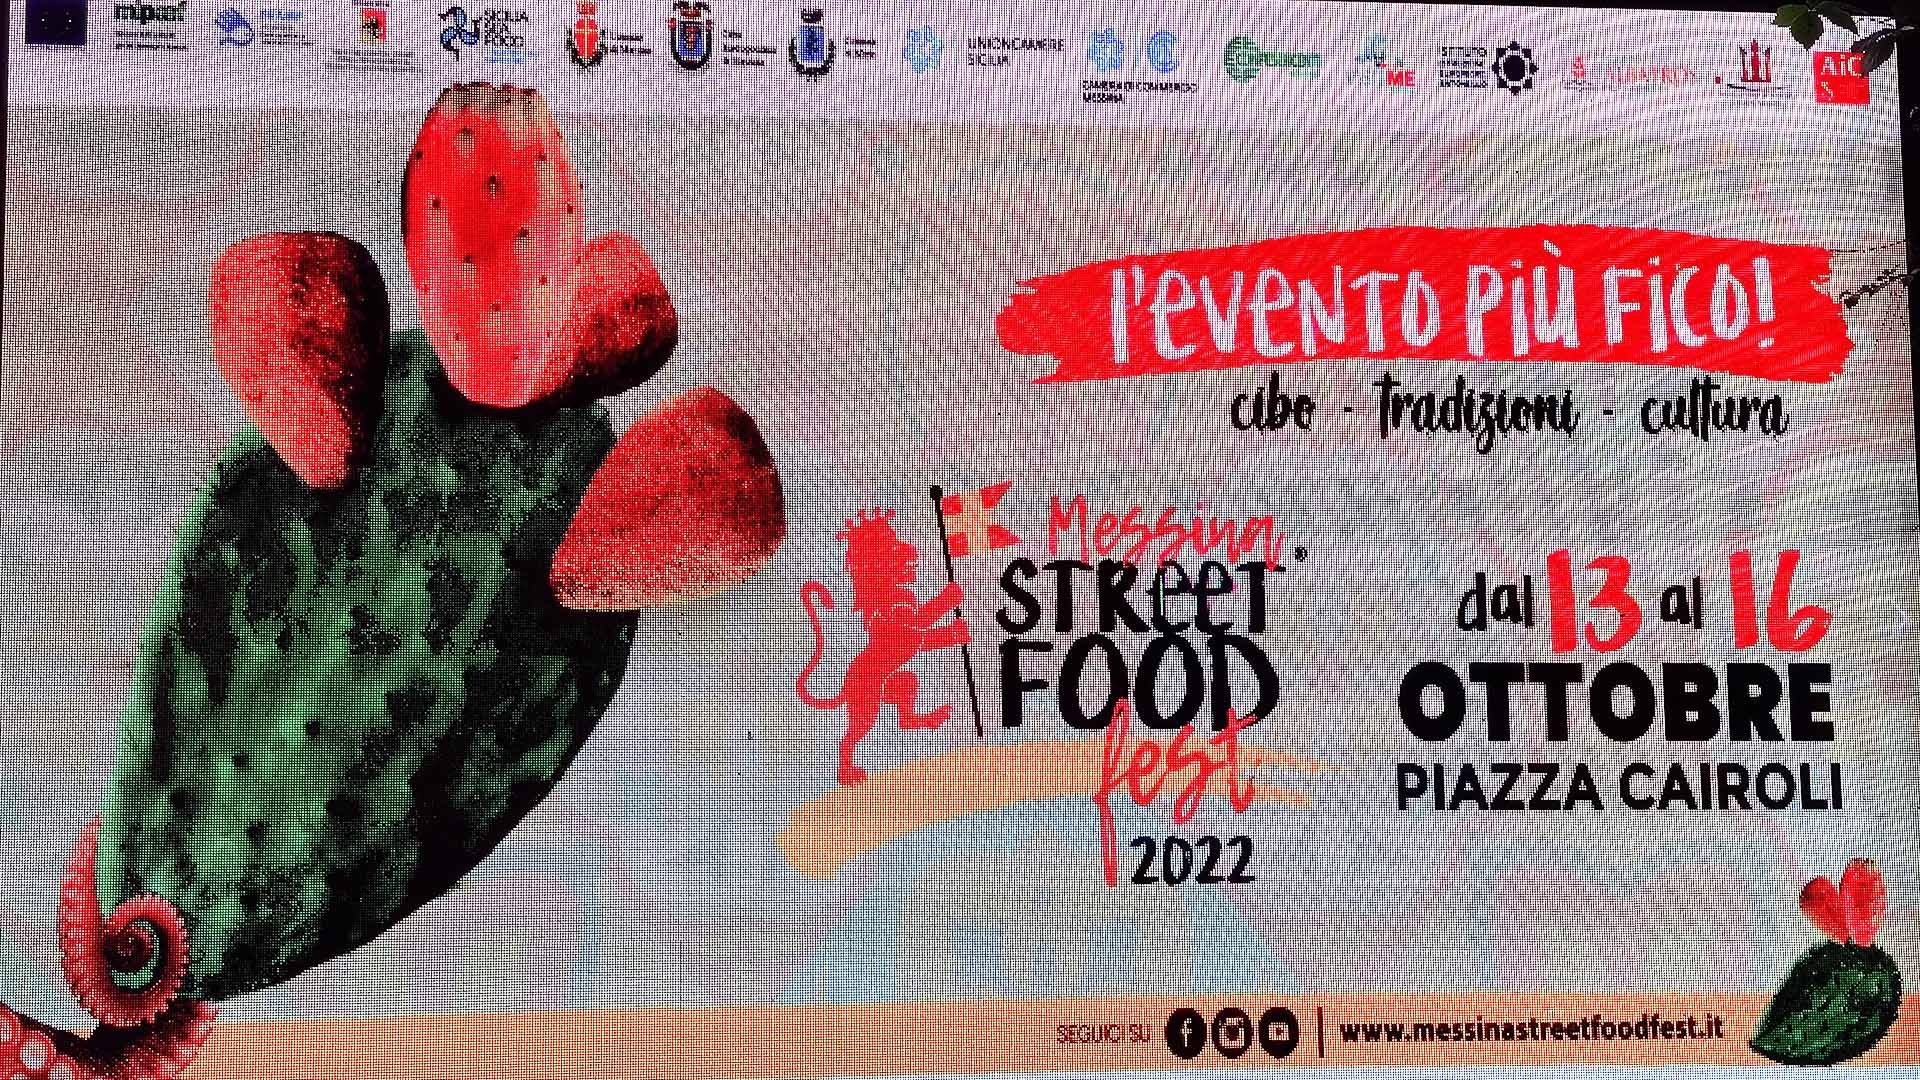 Manifesro-street food 2022_MessinaWebTv_Cronaca